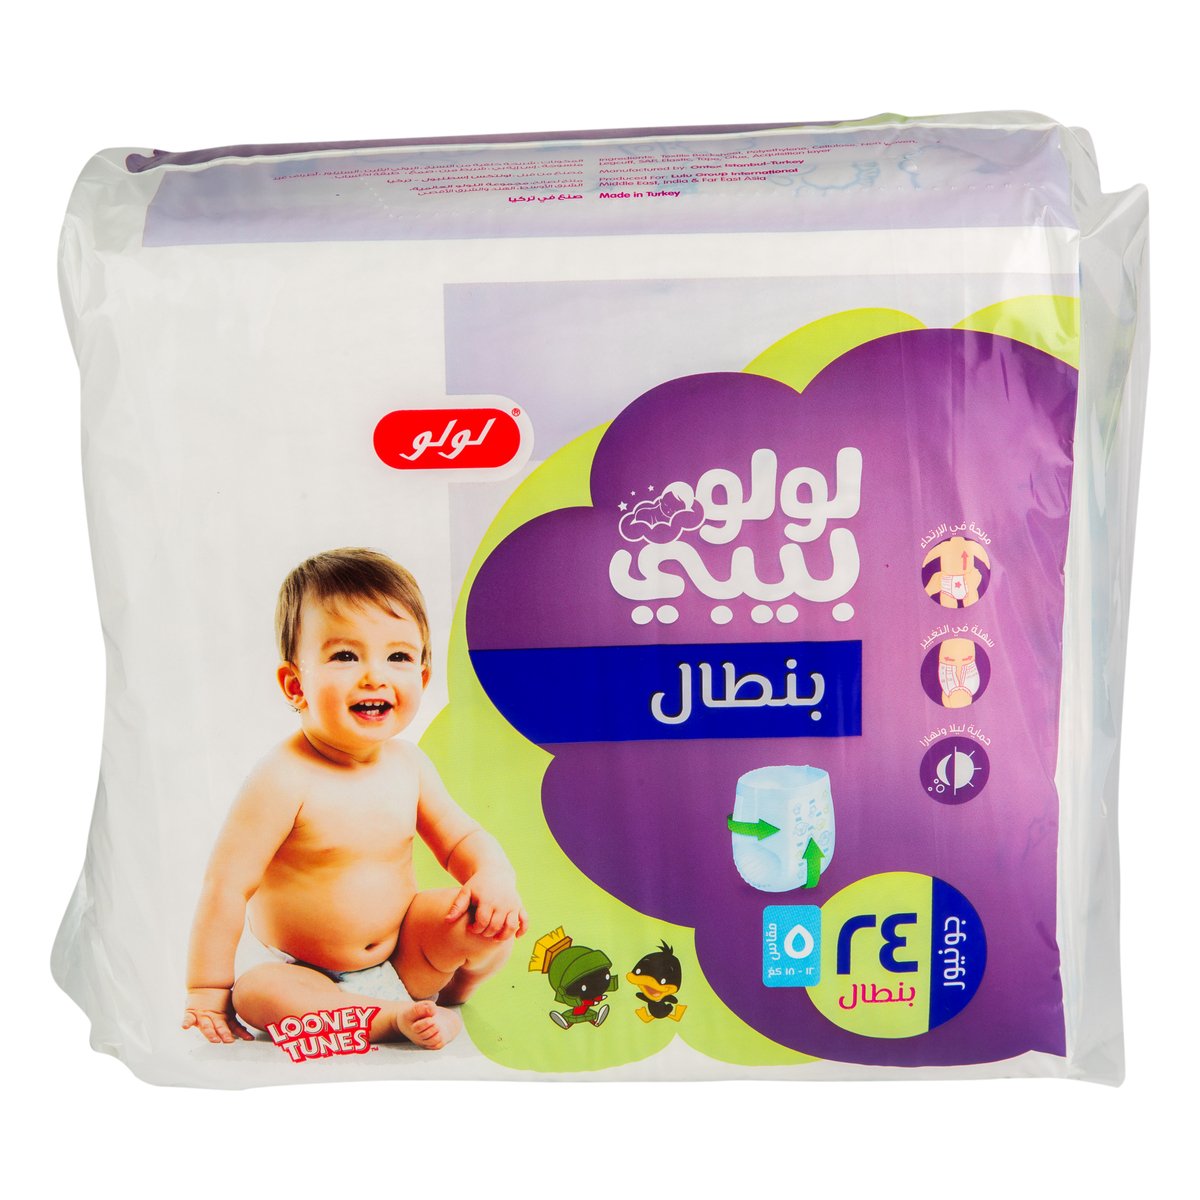 LuLu Baby Diaper Pants Size 5 Junior 12-18kg 24pcs